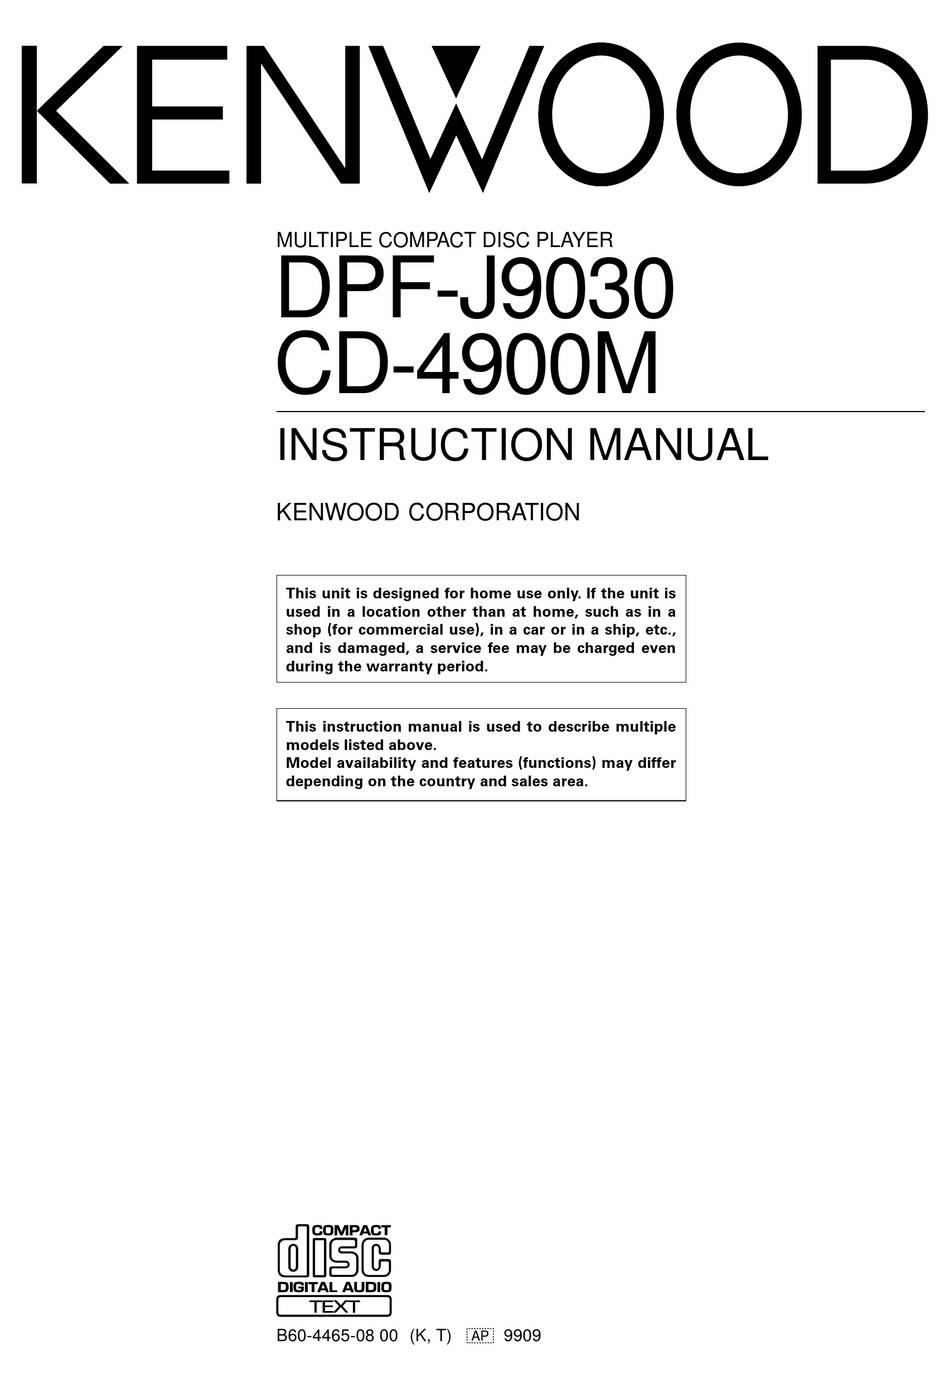 Kenwood CD-4900M